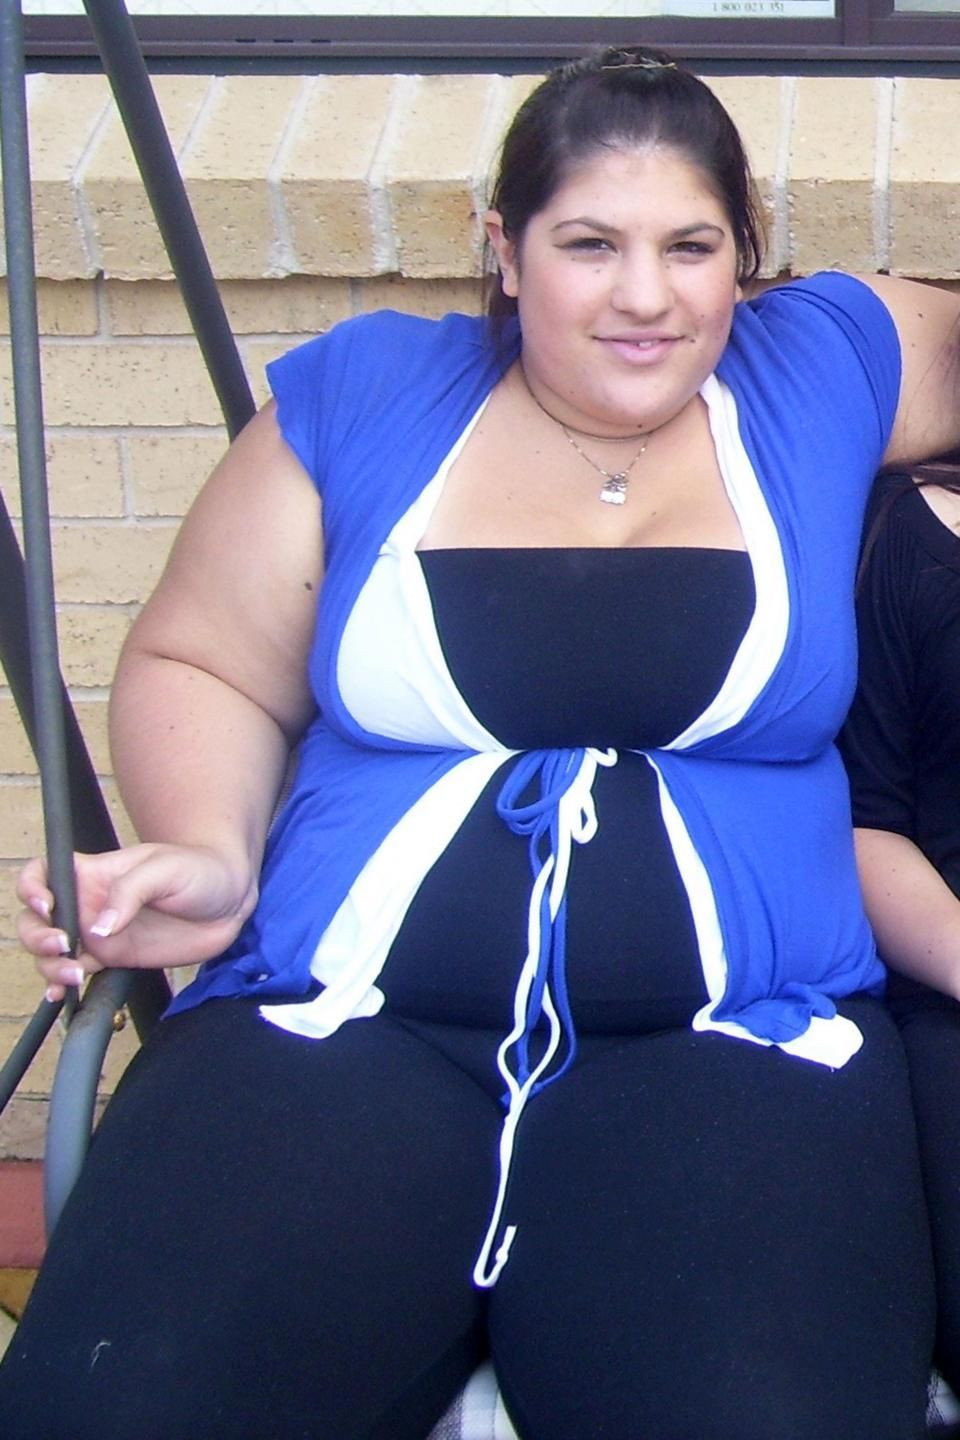 Obez kadın yeni kilosuyla şoke etti! İşte diyet listesi - Resim: 1